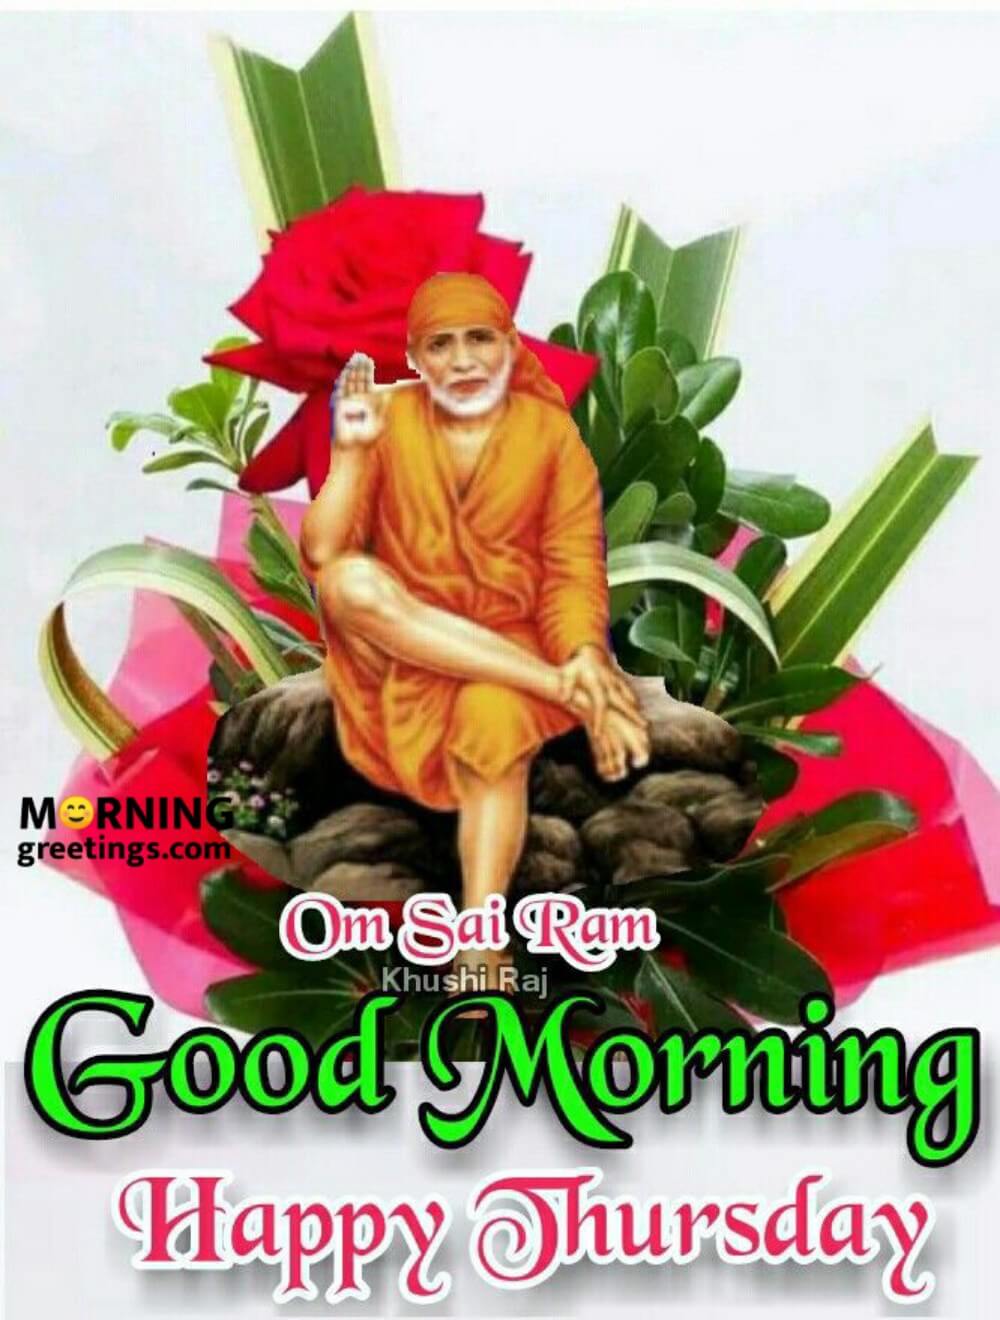 32 Best Sai Baba Morning Greetings - Morning Greetings – Morning ...